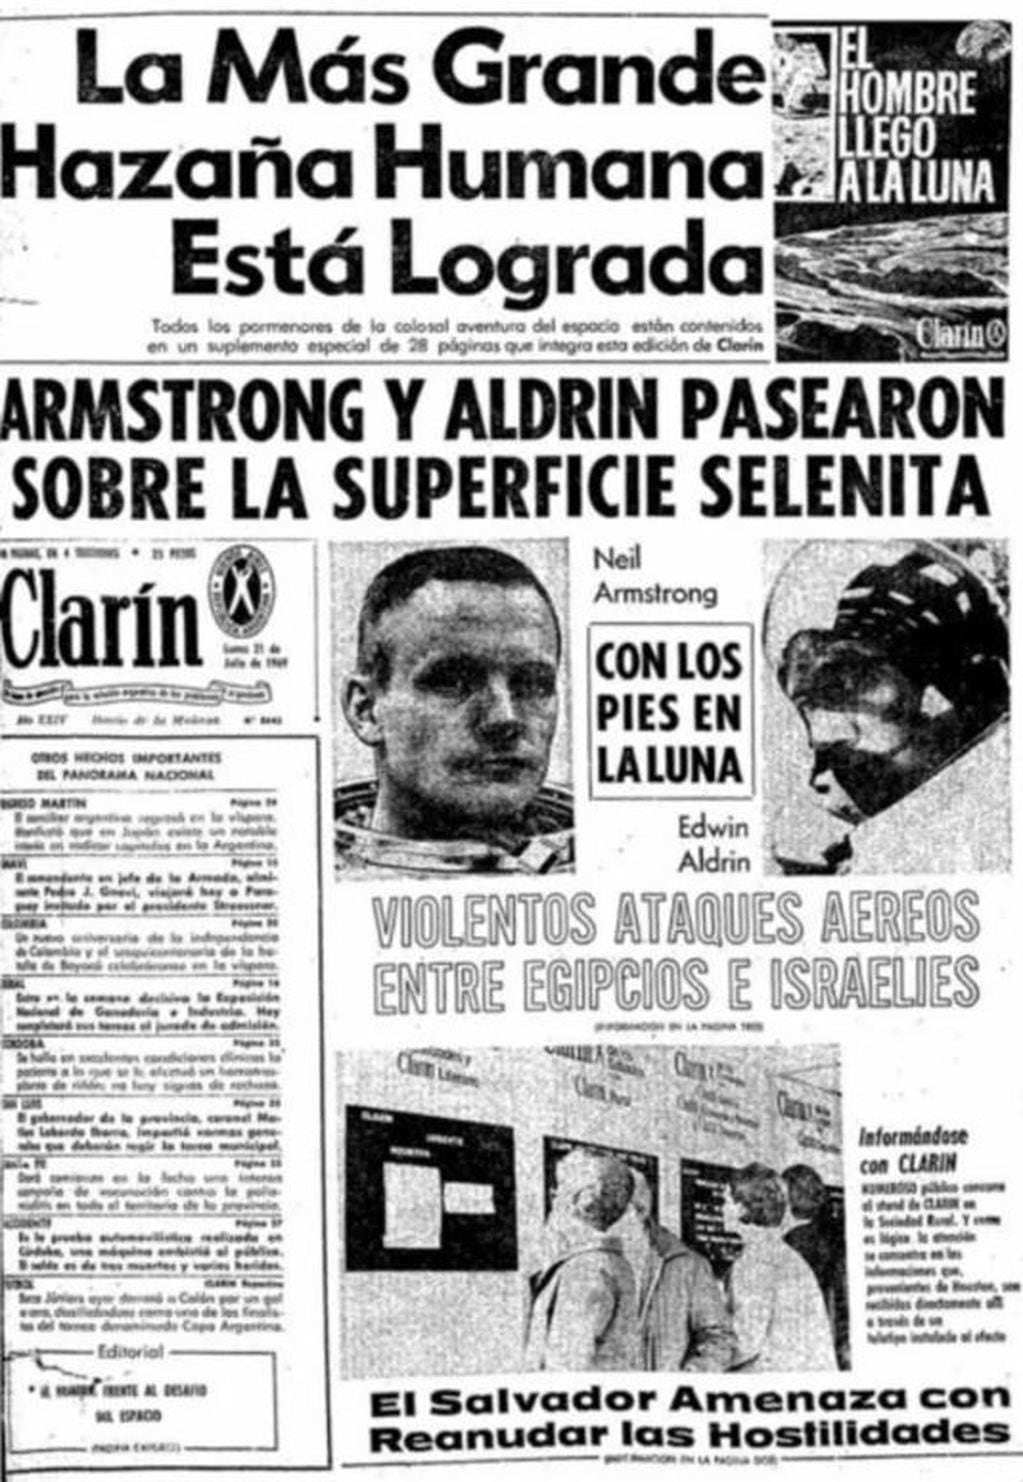 La tapa del diario Clarín del 21 de julio de 1969, con la llegada del hombre a la Luna. (Clarín)